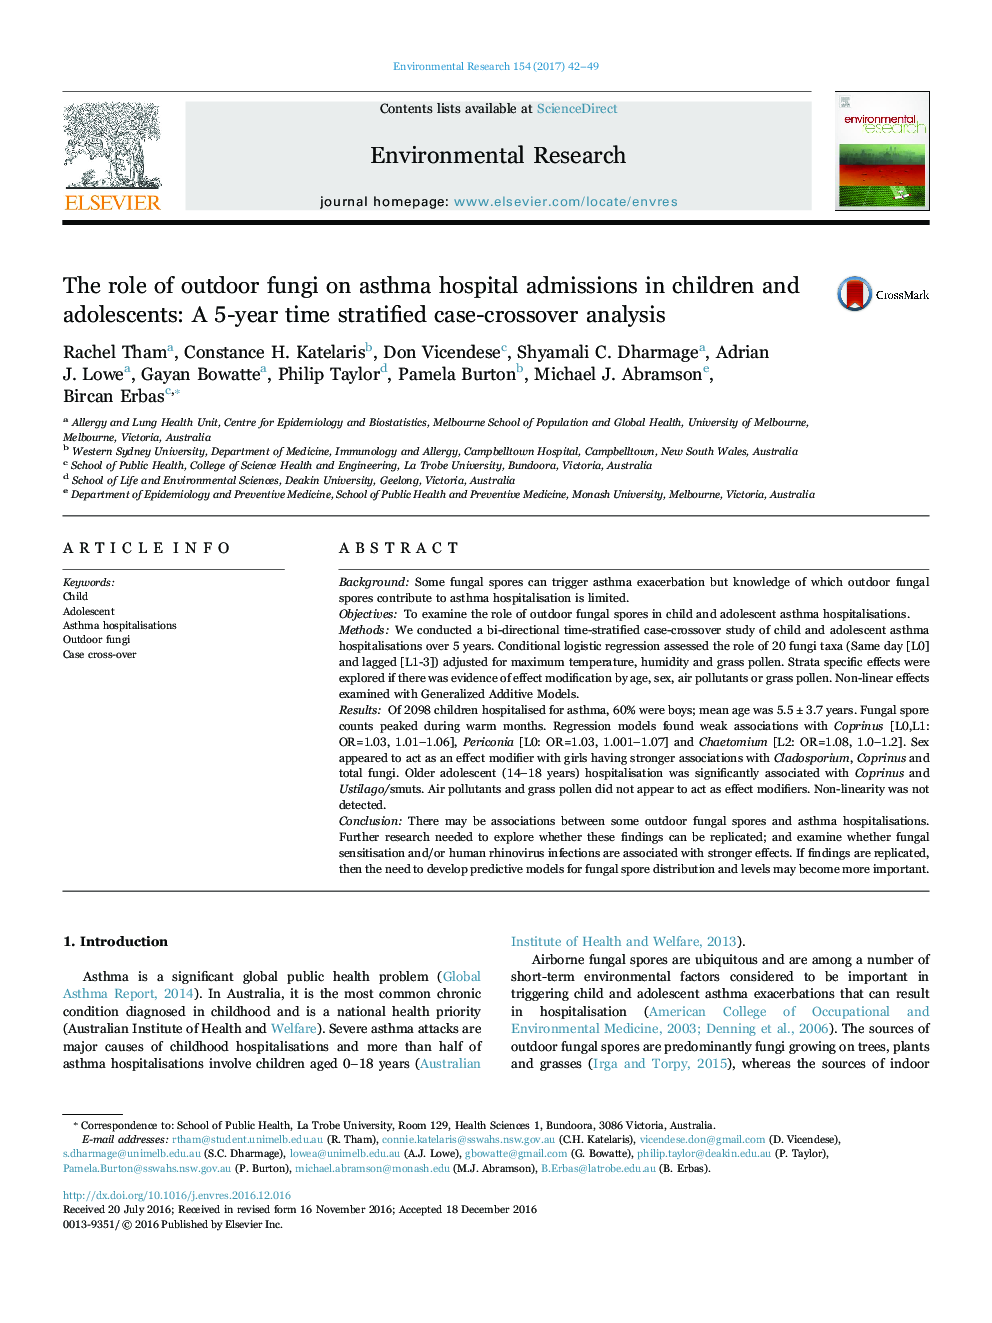 نقش قارچ های خارجی در پذیرش بیمارستان آسم در کودکان و نوجوانان: یک تجزیه و تحلیل تقسیم مورد 5 ساله 